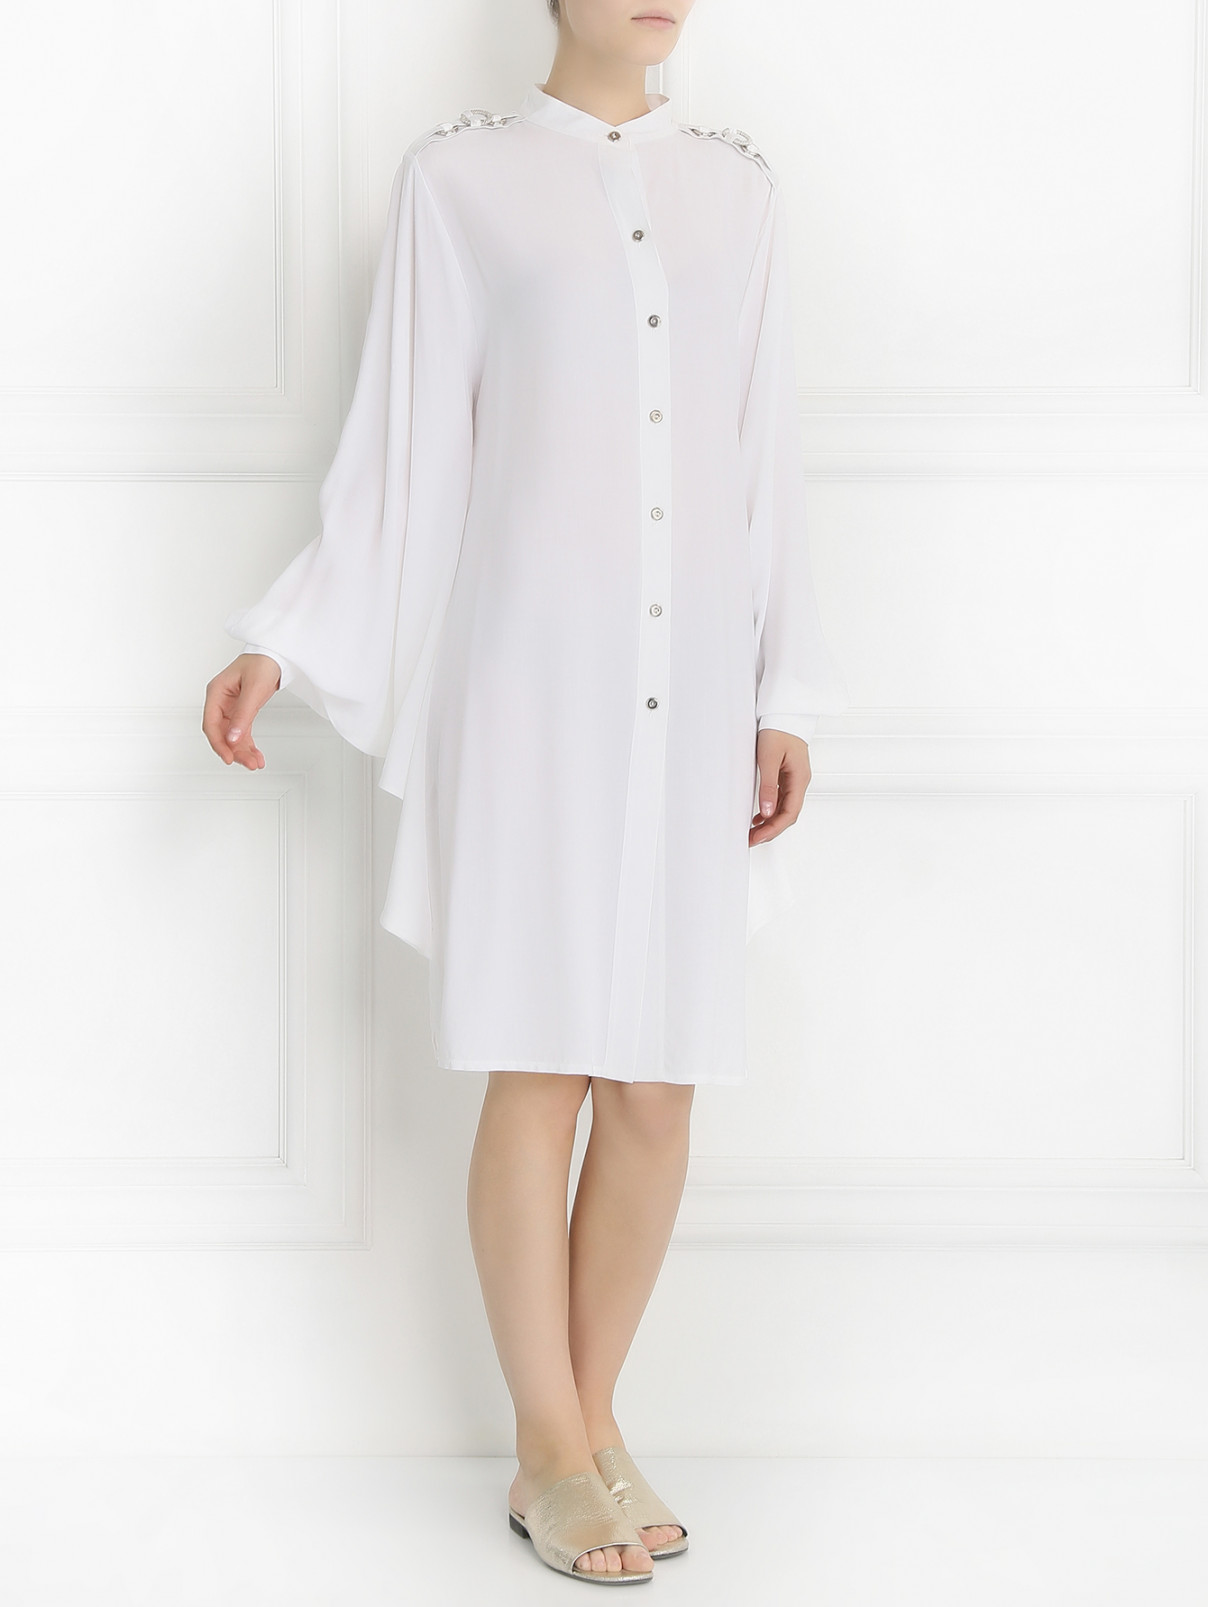 Удлиненный халат на пуговицах Anna Club by La Perla  –  Модель Общий вид  – Цвет:  Белый